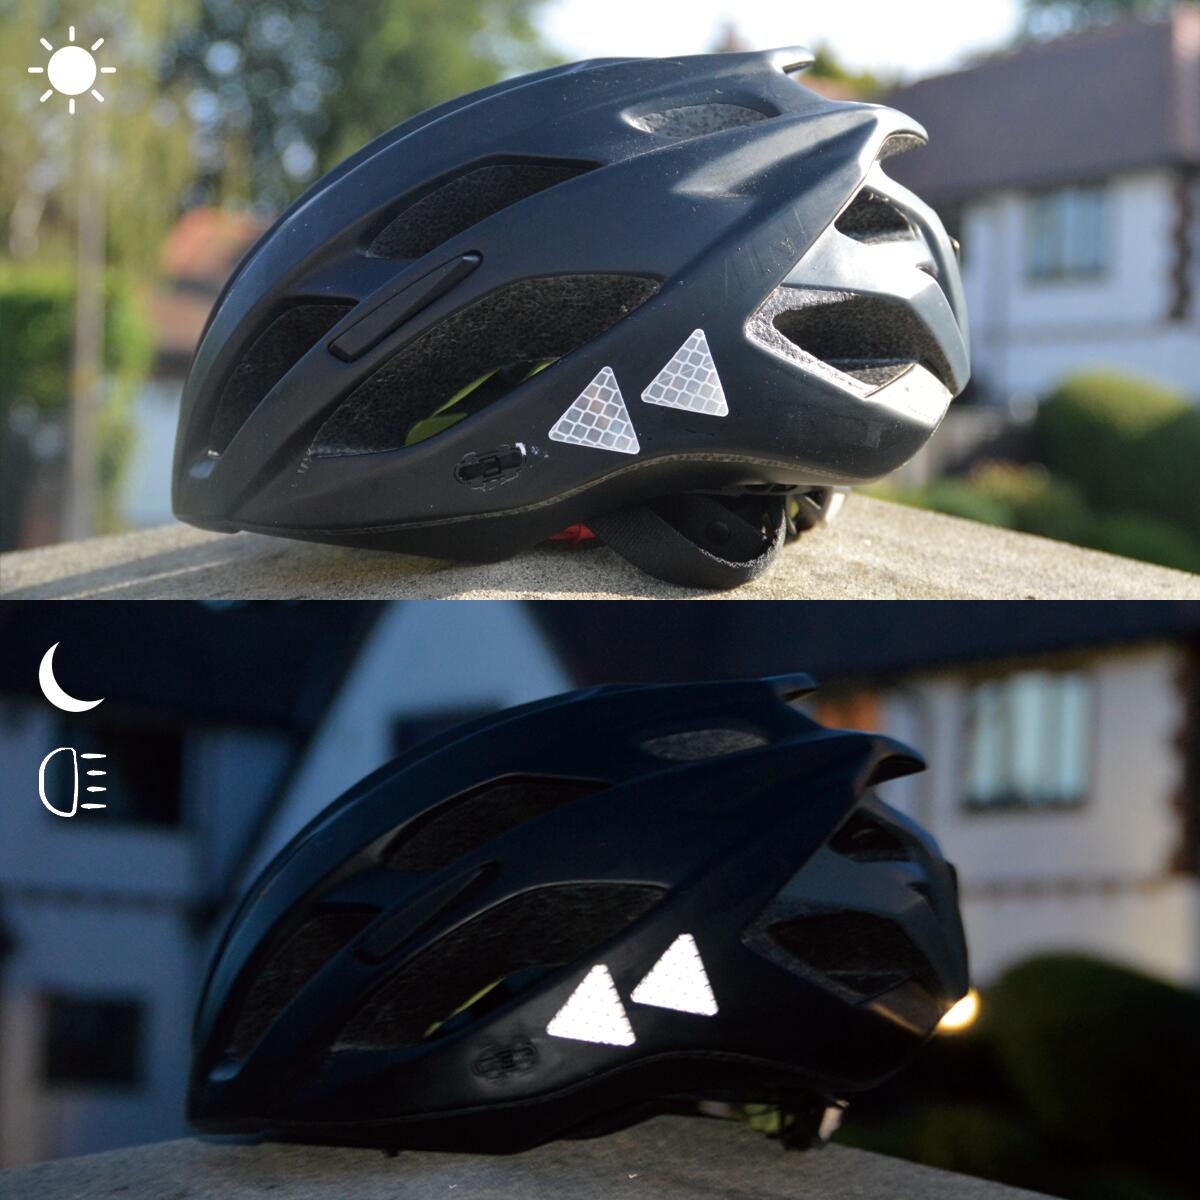 Salzmann Pegatinas reflectantes 3M – Adhesivos suaves para mochilas,  bicicletas, cascos, cochecitos, etc. – Fabricado con material reflectante 3M